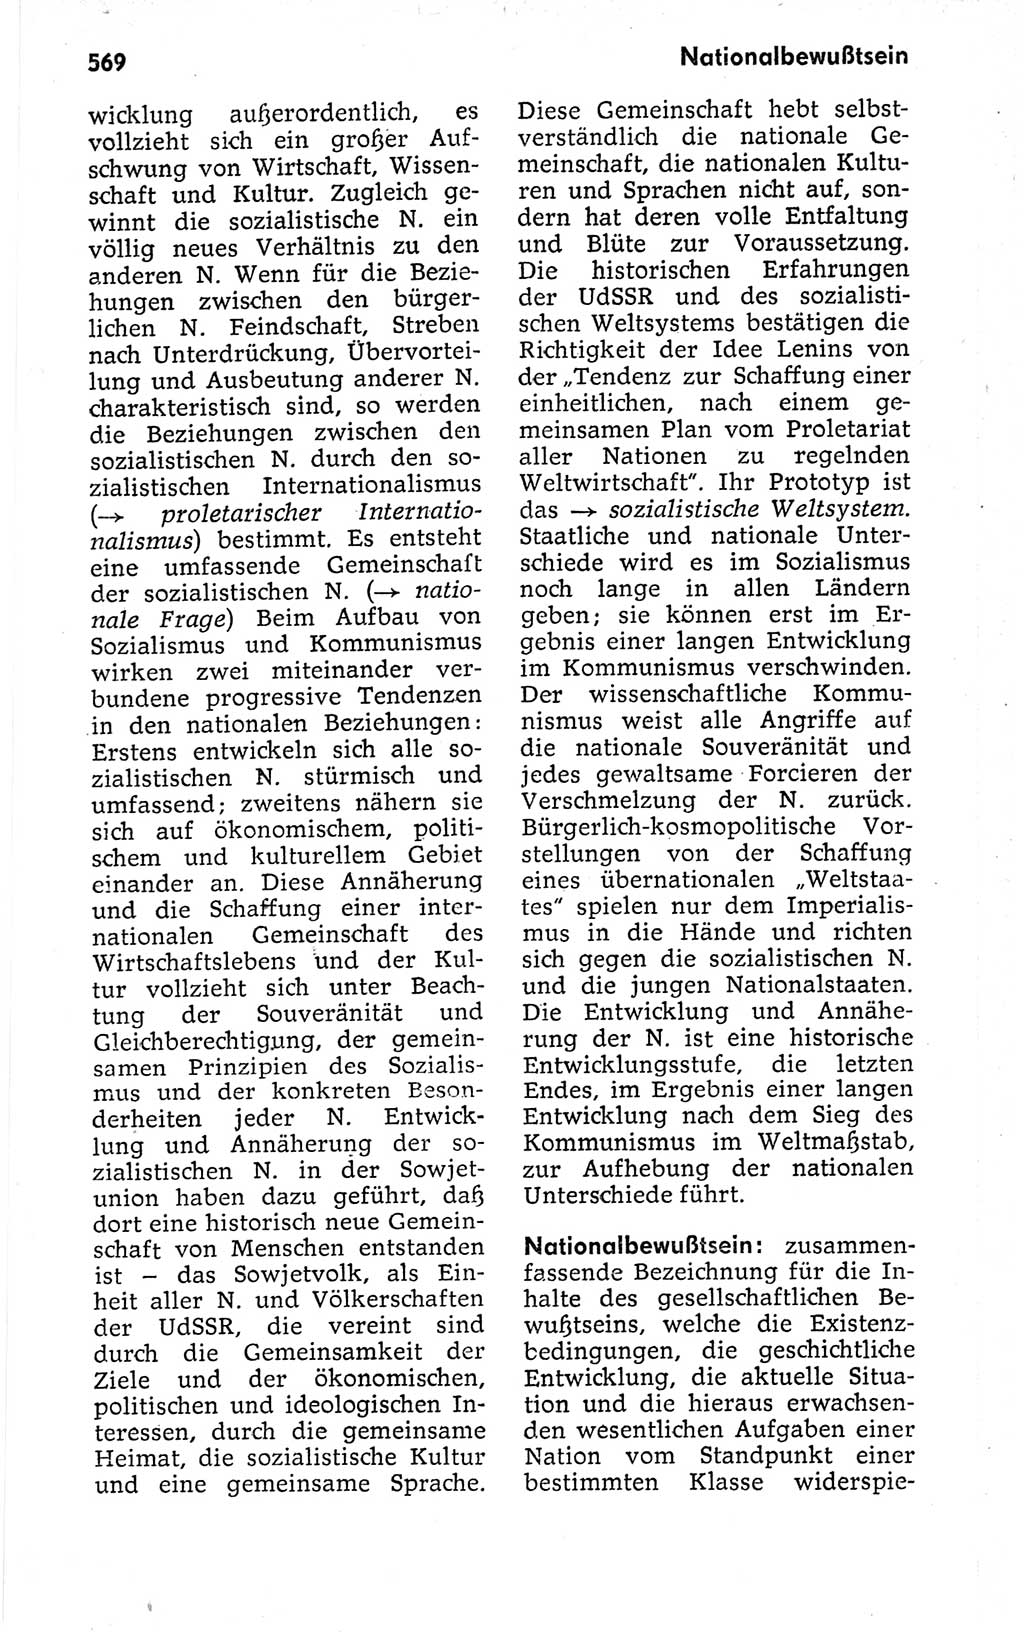 Kleines politisches Wörterbuch [Deutsche Demokratische Republik (DDR)] 1973, Seite 569 (Kl. pol. Wb. DDR 1973, S. 569)